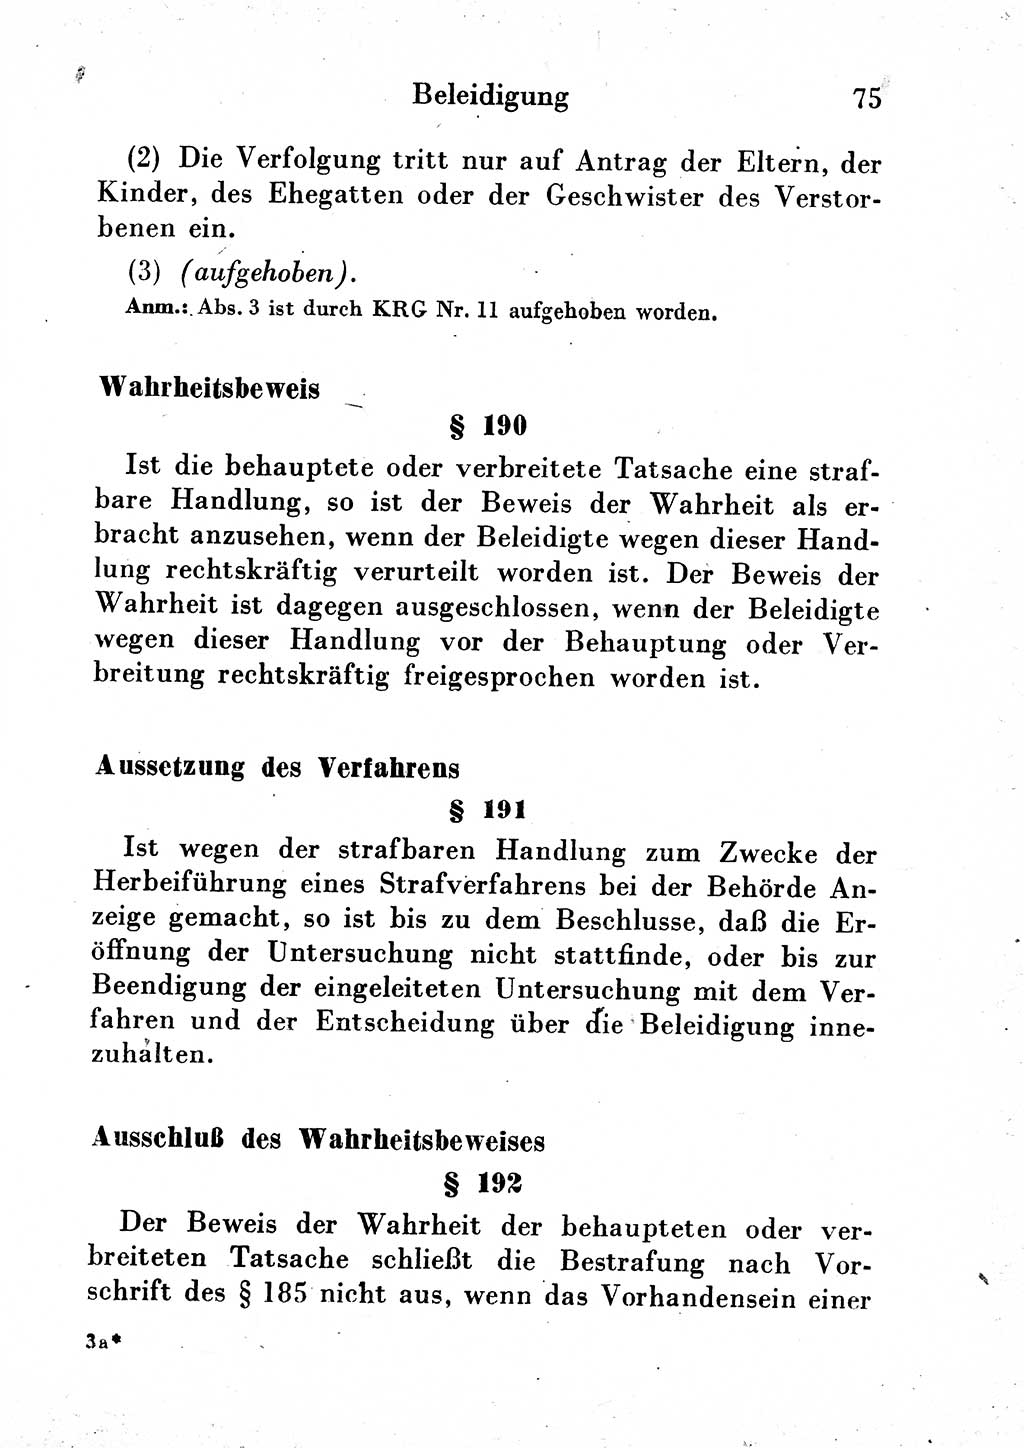 Strafgesetzbuch (StGB) und andere Strafgesetze [Deutsche Demokratische Republik (DDR)] 1954, Seite 75 (StGB Strafges. DDR 1954, S. 75)